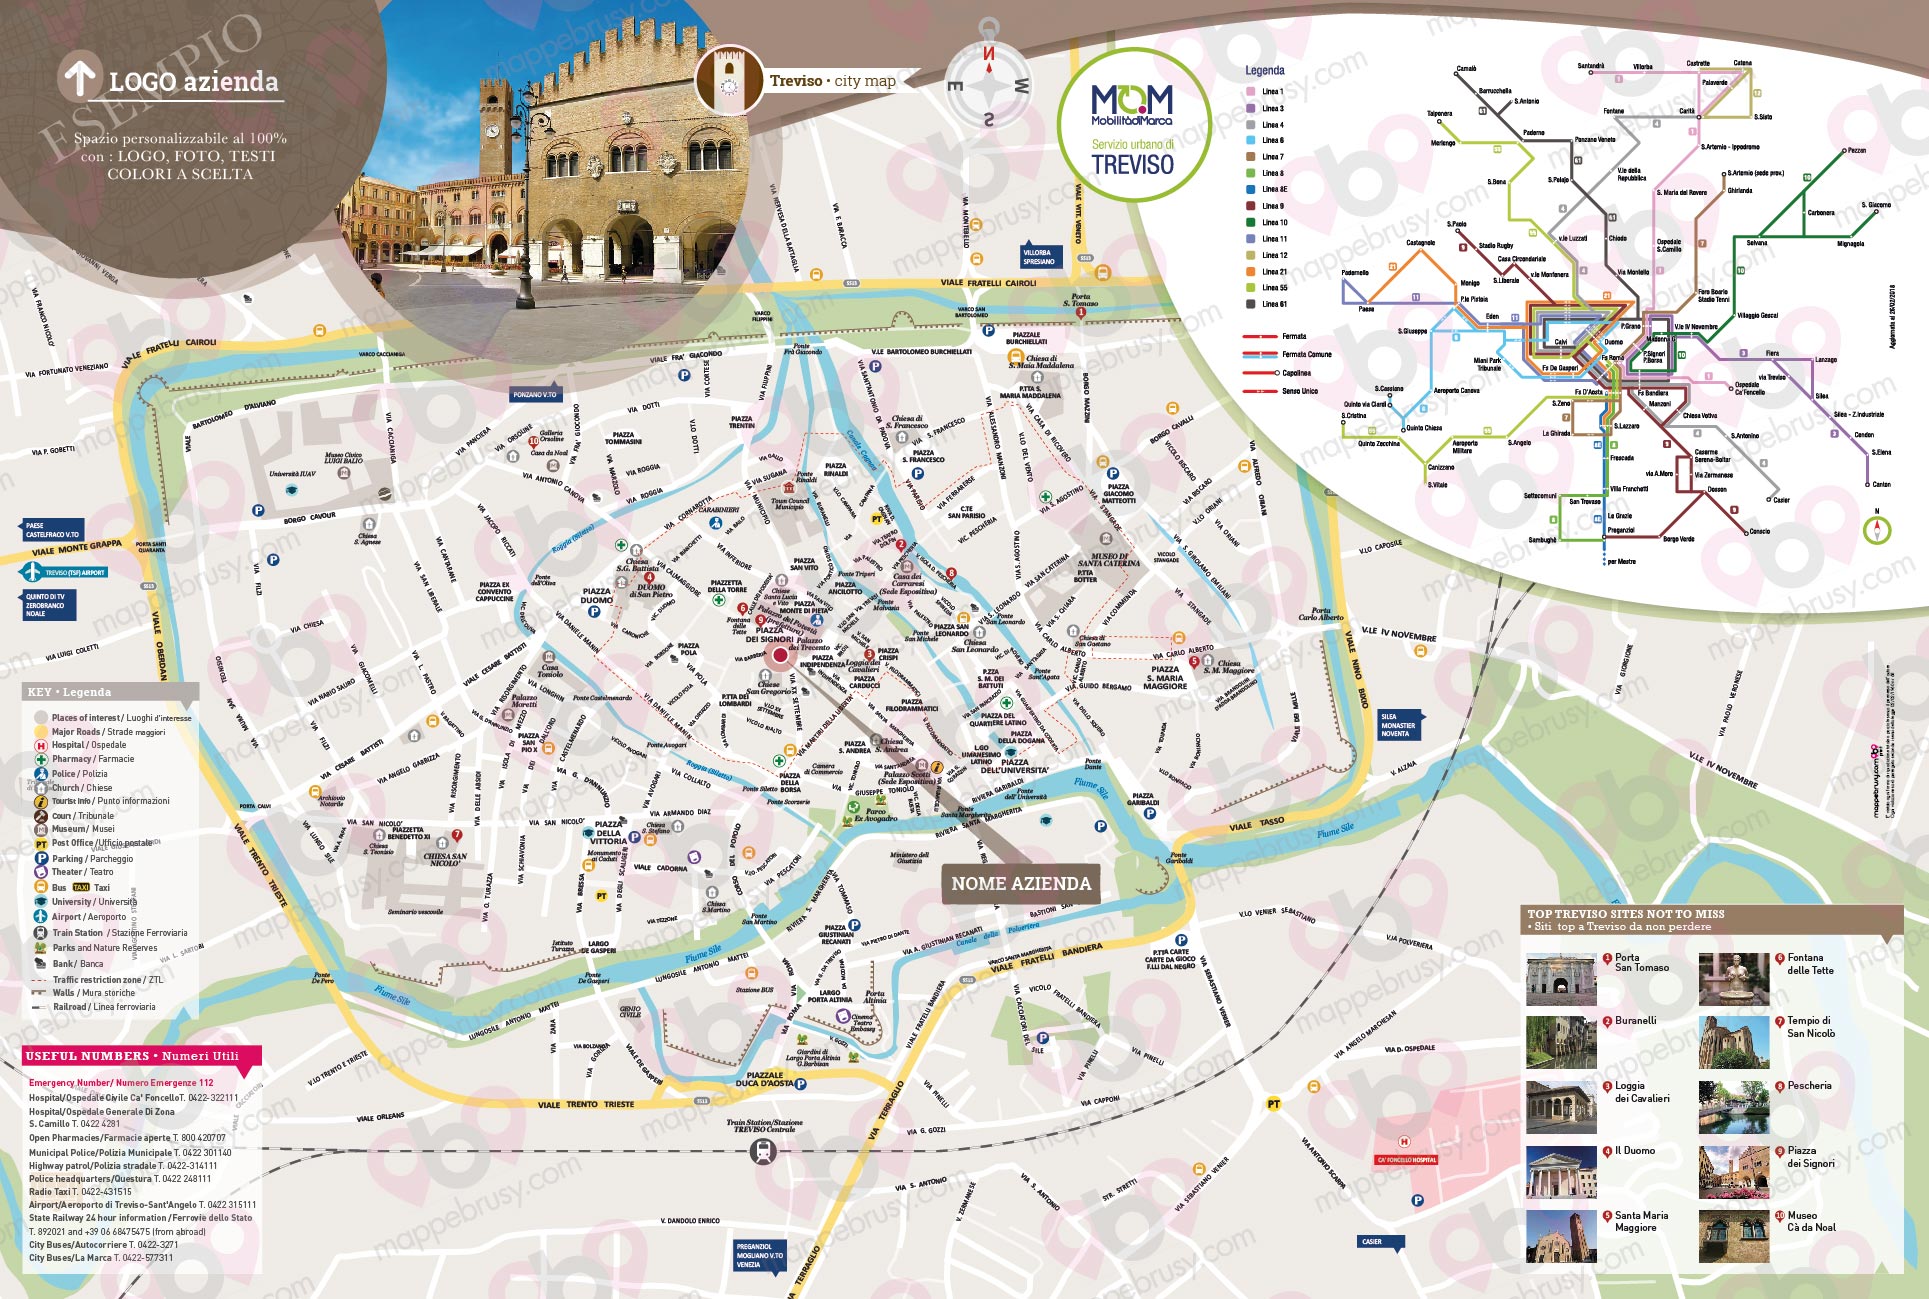 Mappa di Treviso - Treviso city map - mappa Treviso - mappa personalizzata di Treviso - mappa tursitica di Treviso